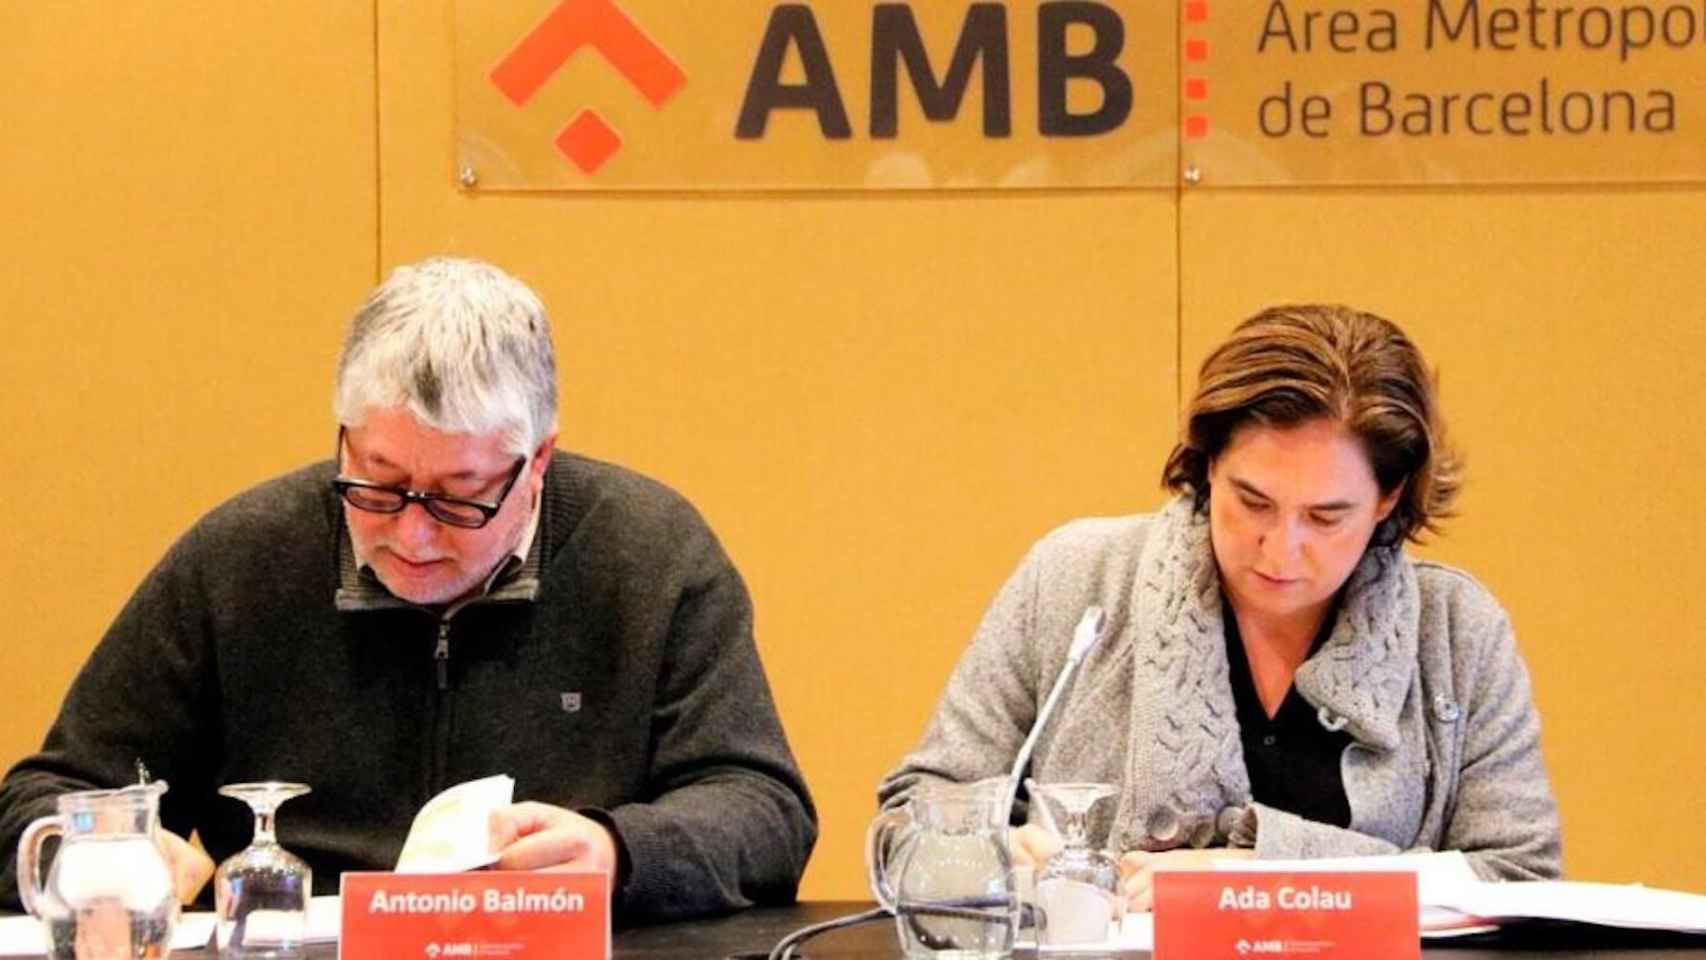 Antoni Balmón y Ada Colau, en un acto del AMB  / CG